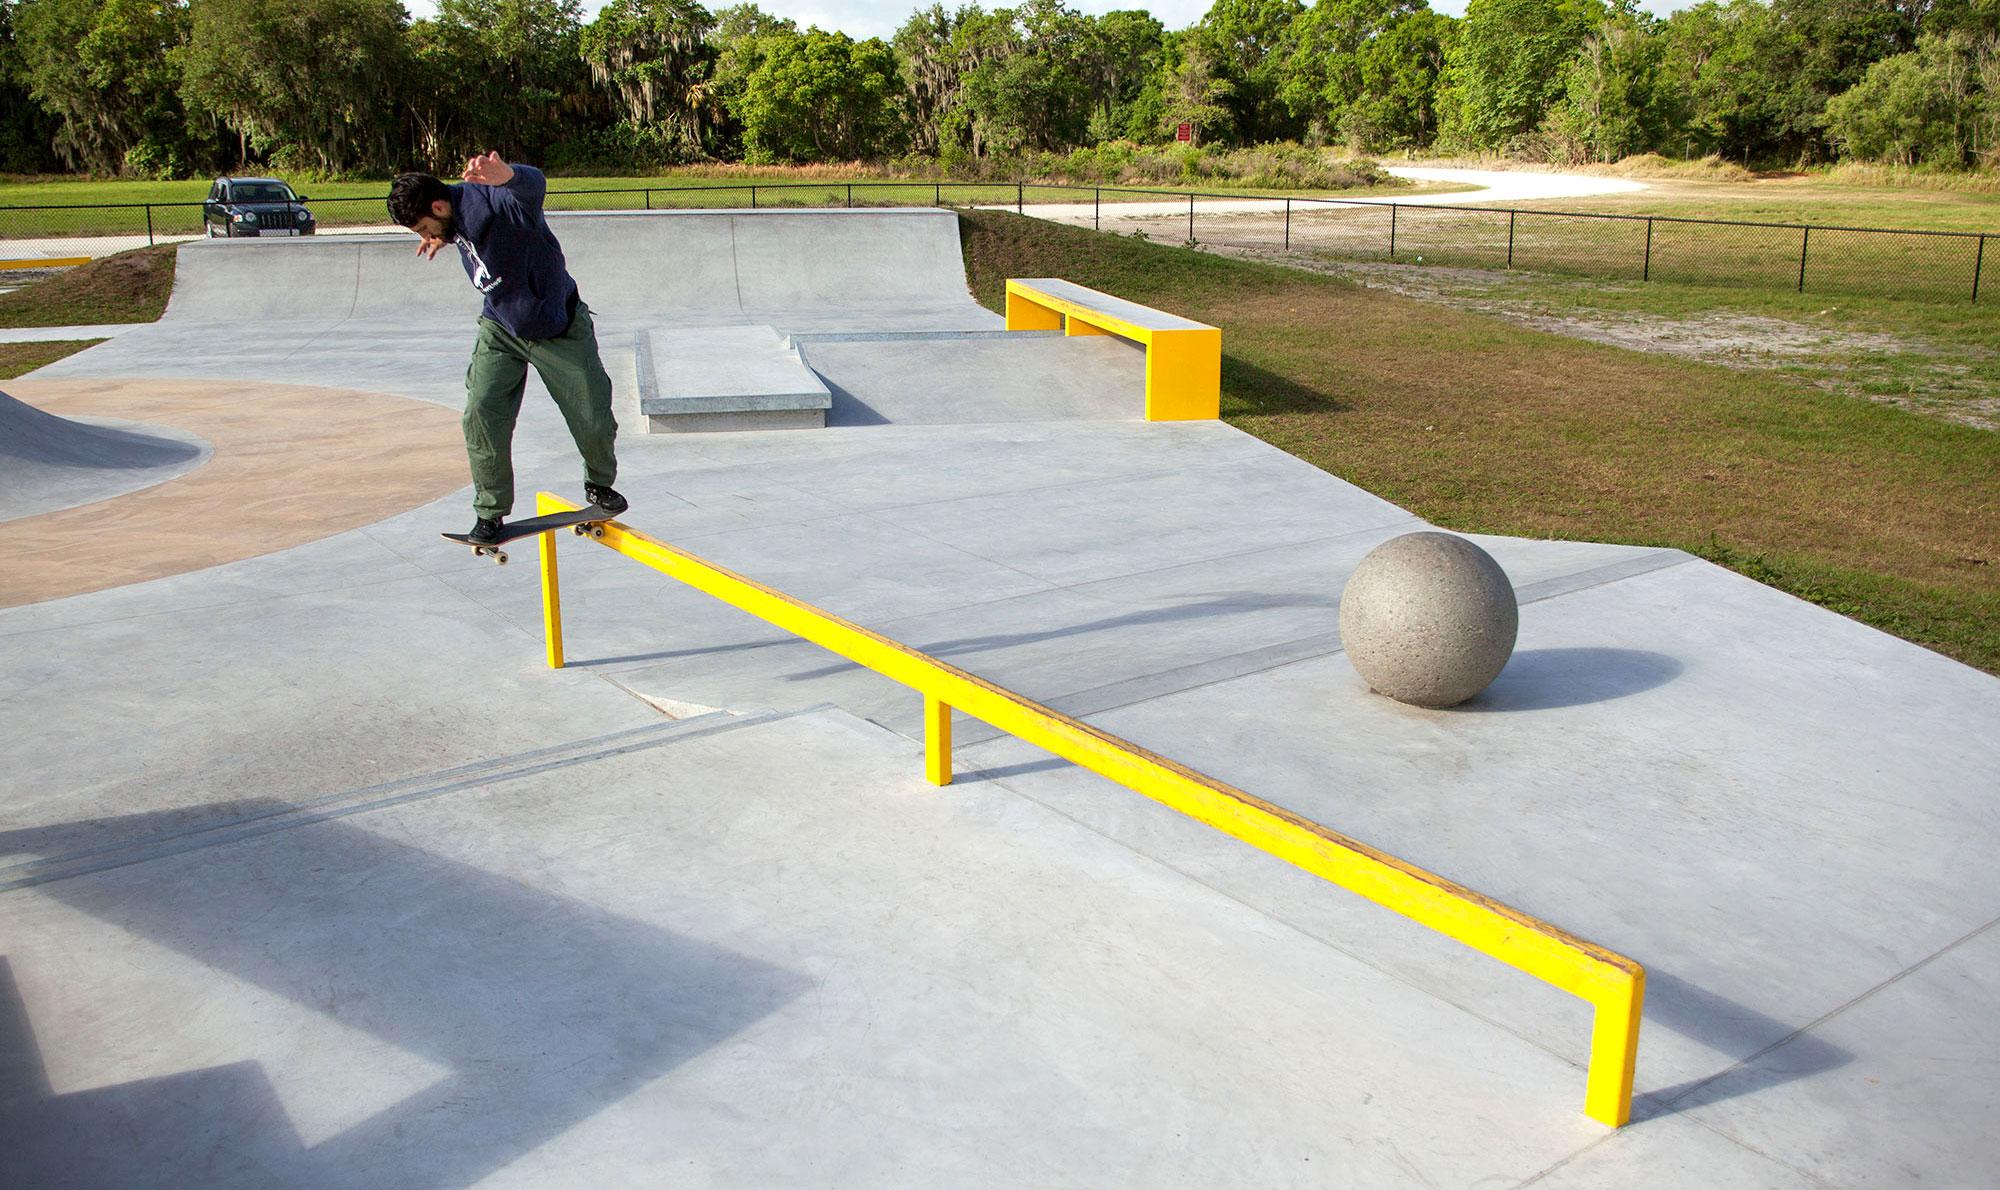 Backside Tailslide long flatbar at Mulberry Skatepark in Polk Florida